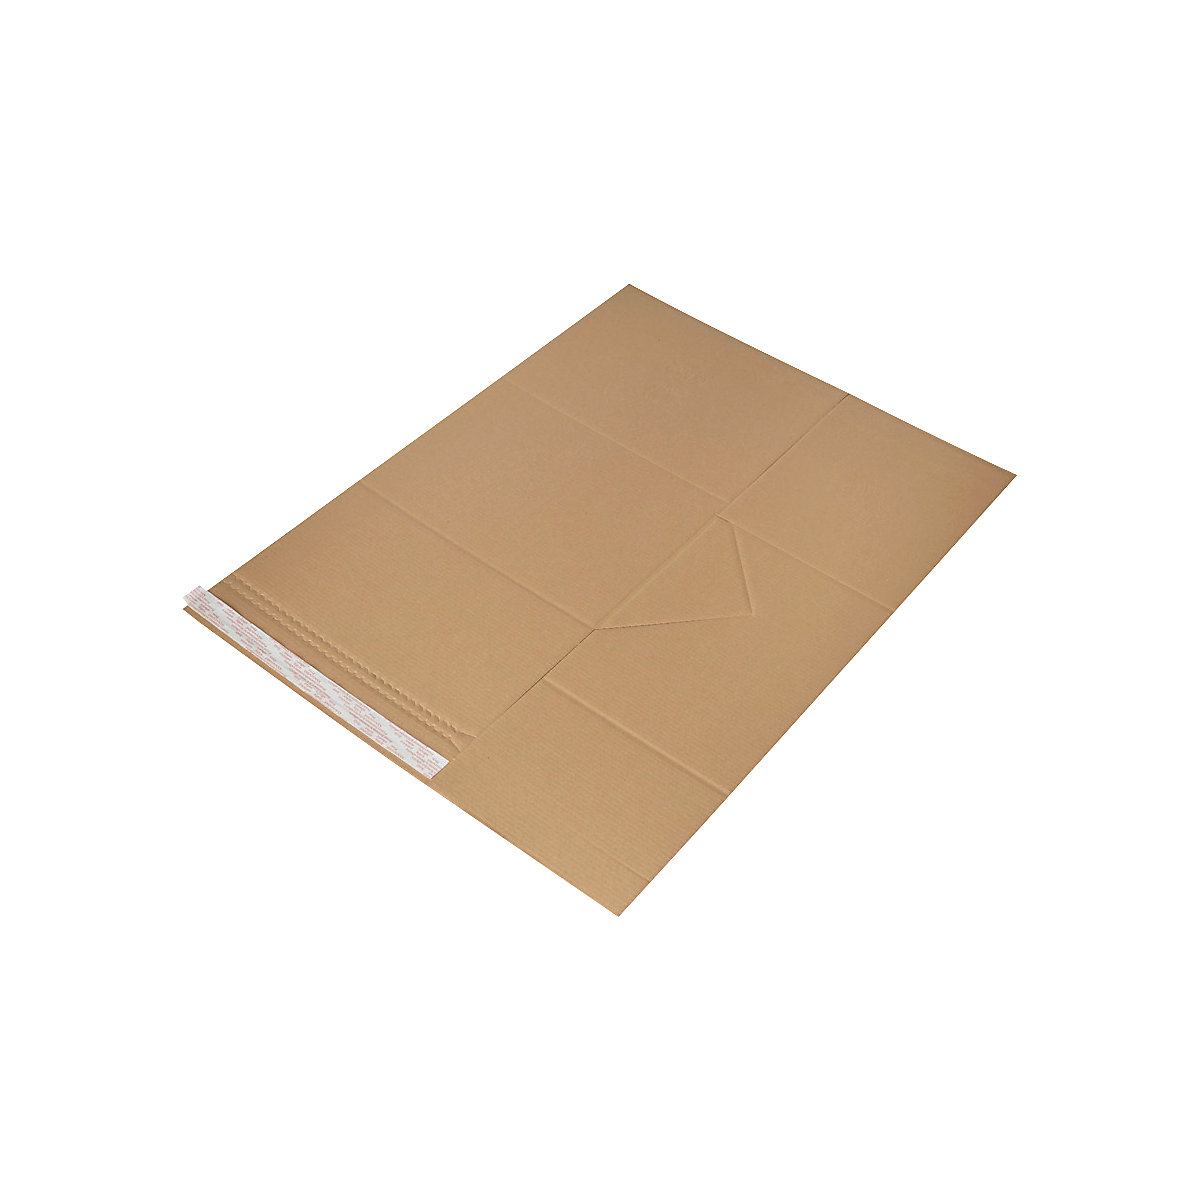 Imballaggio universale Drehfix – flow, con chiusura autoadesiva, lungh. x largh. 330 x 260 mm, a partire da 100 pz.-4